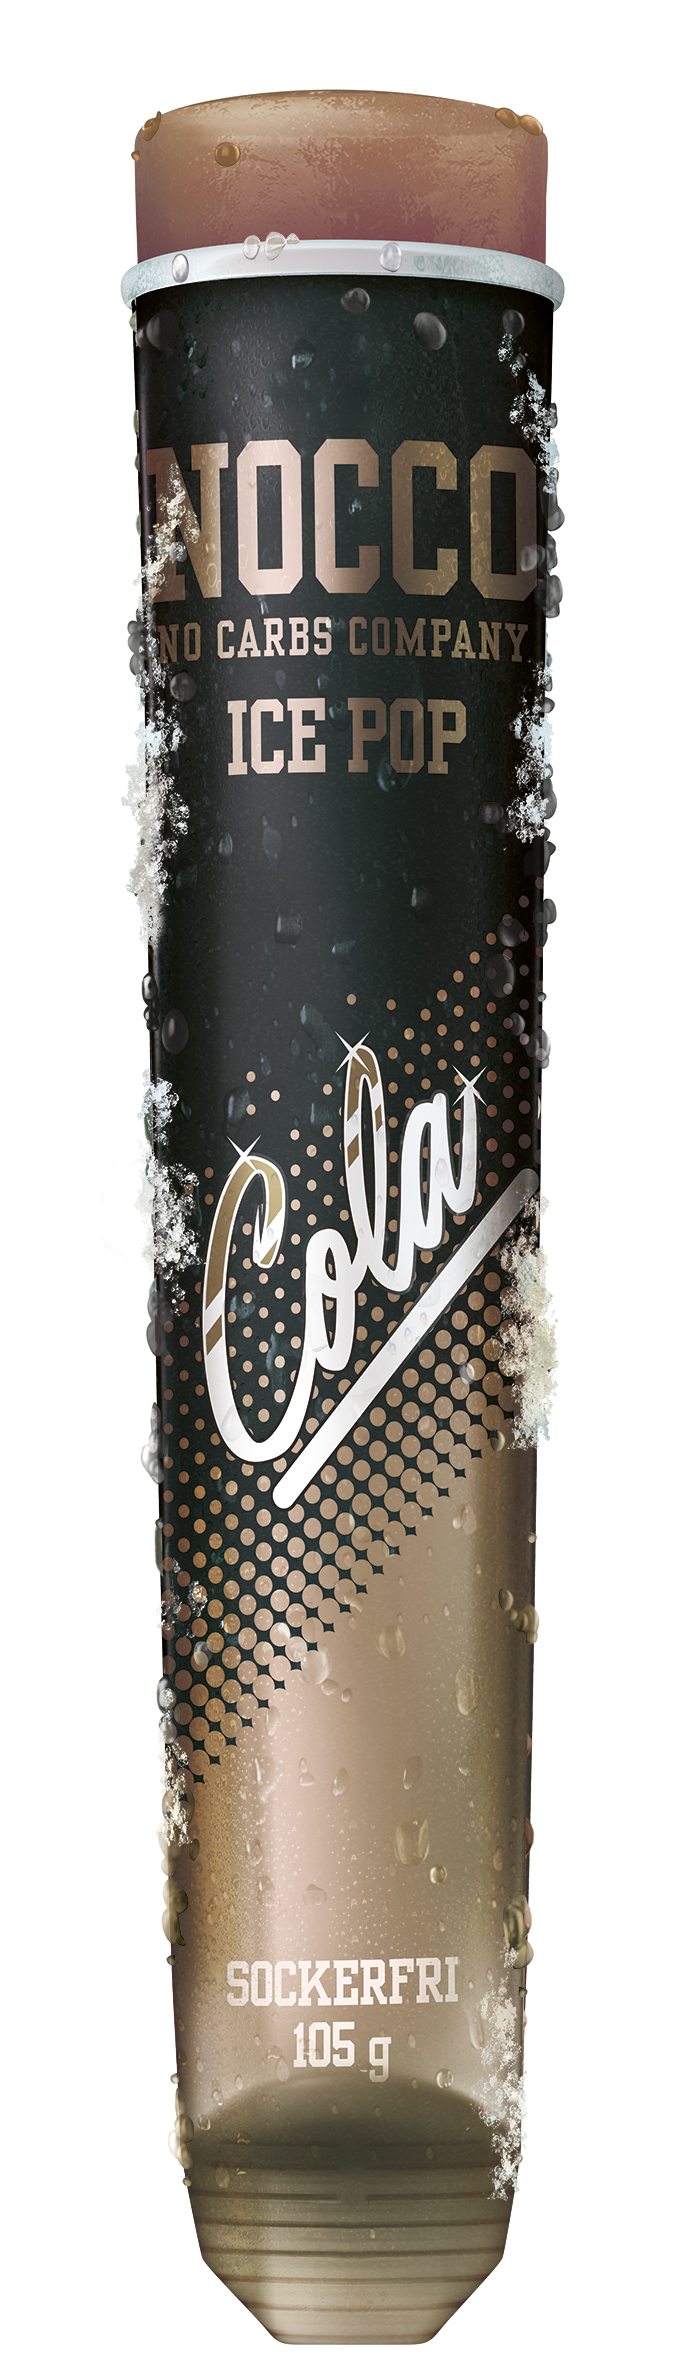 CH-SE_NOCCO_IcePop cola korr